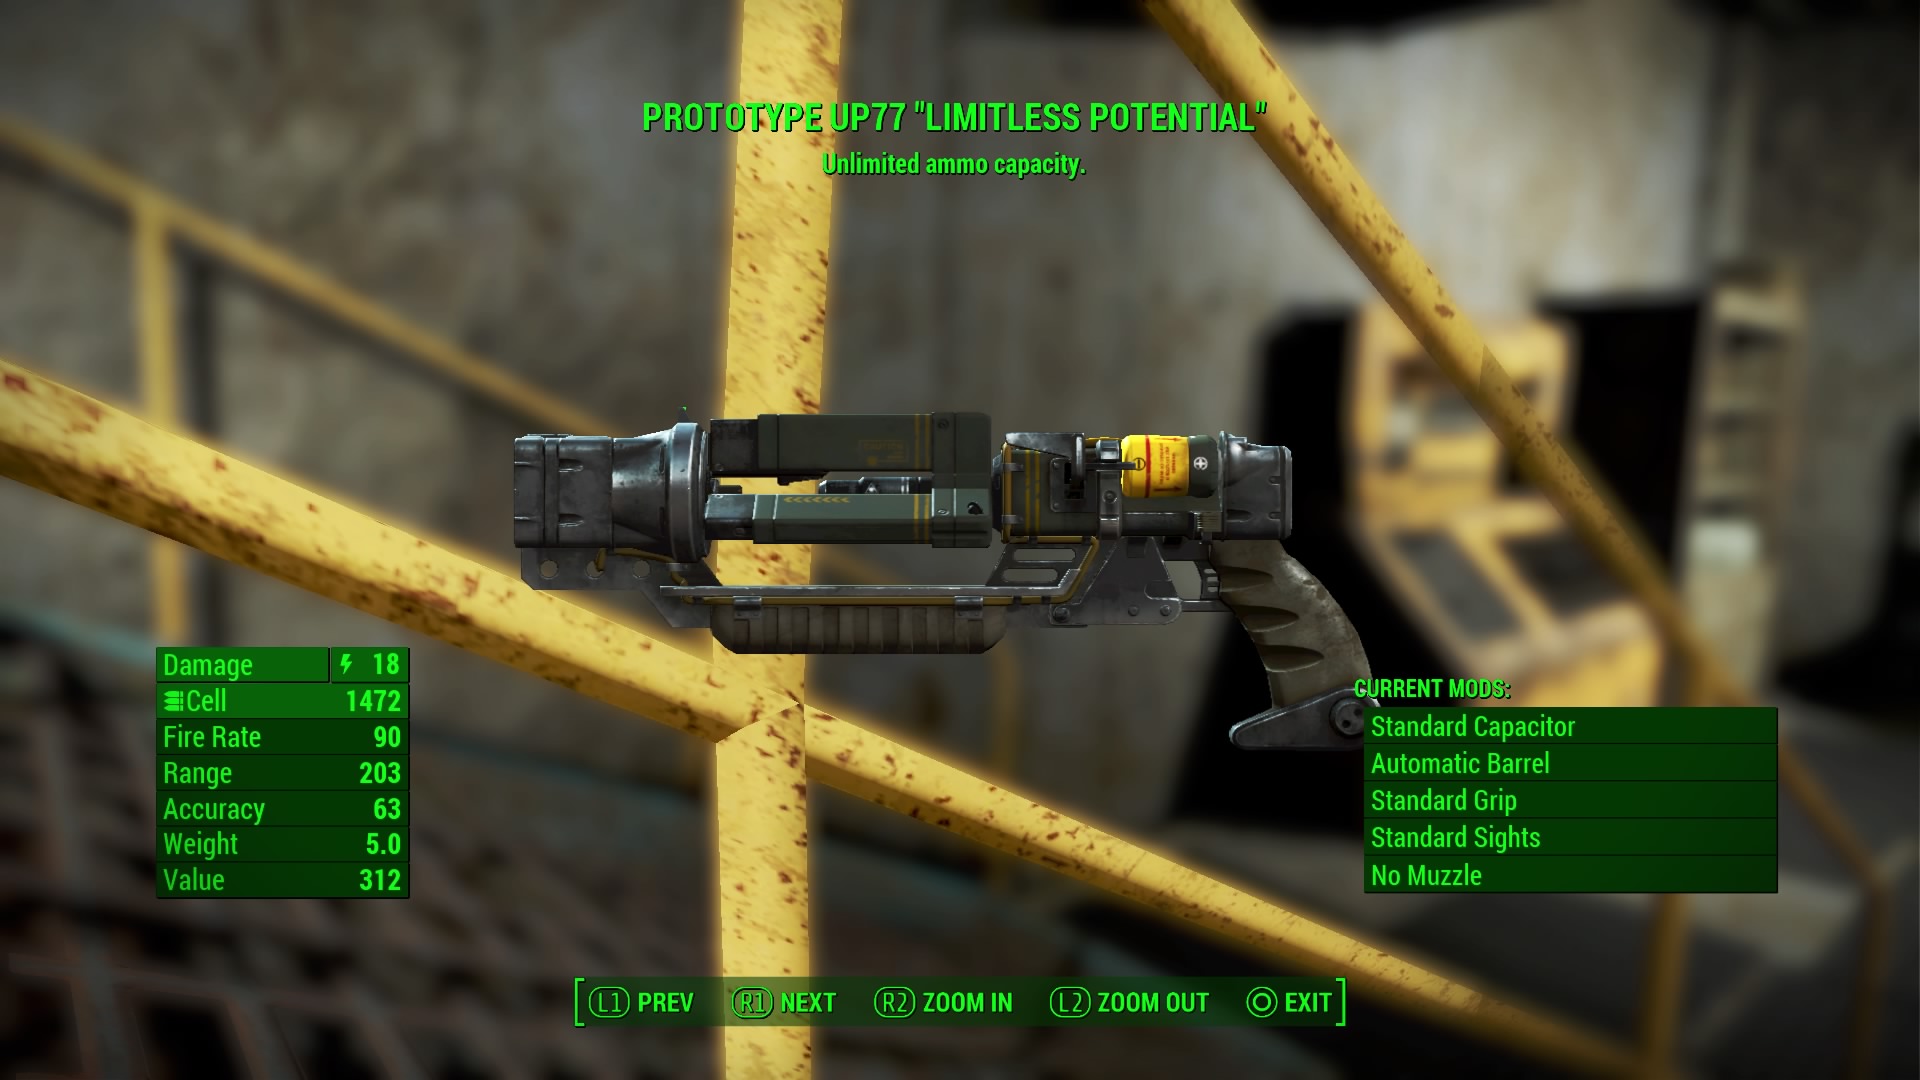 Fallout 4 прототип up77 безграничный потенциал фото 9